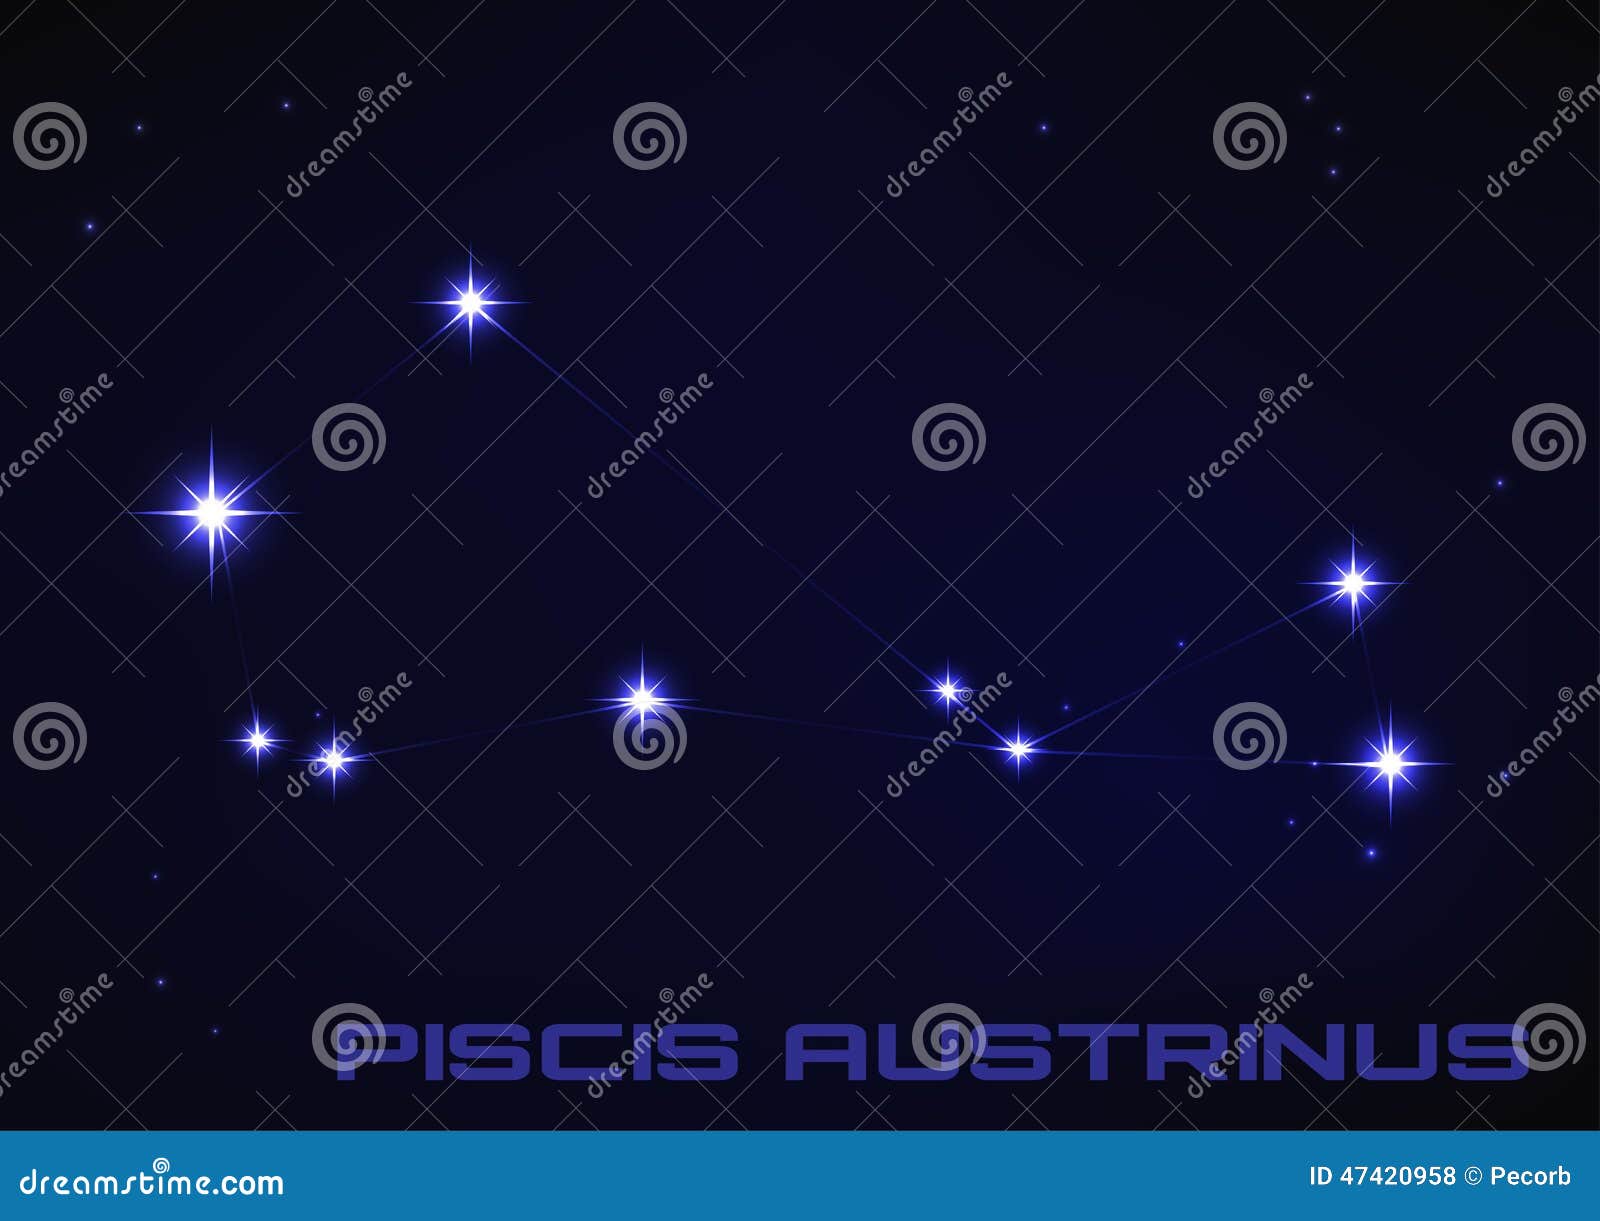 piscis austrinus constellation